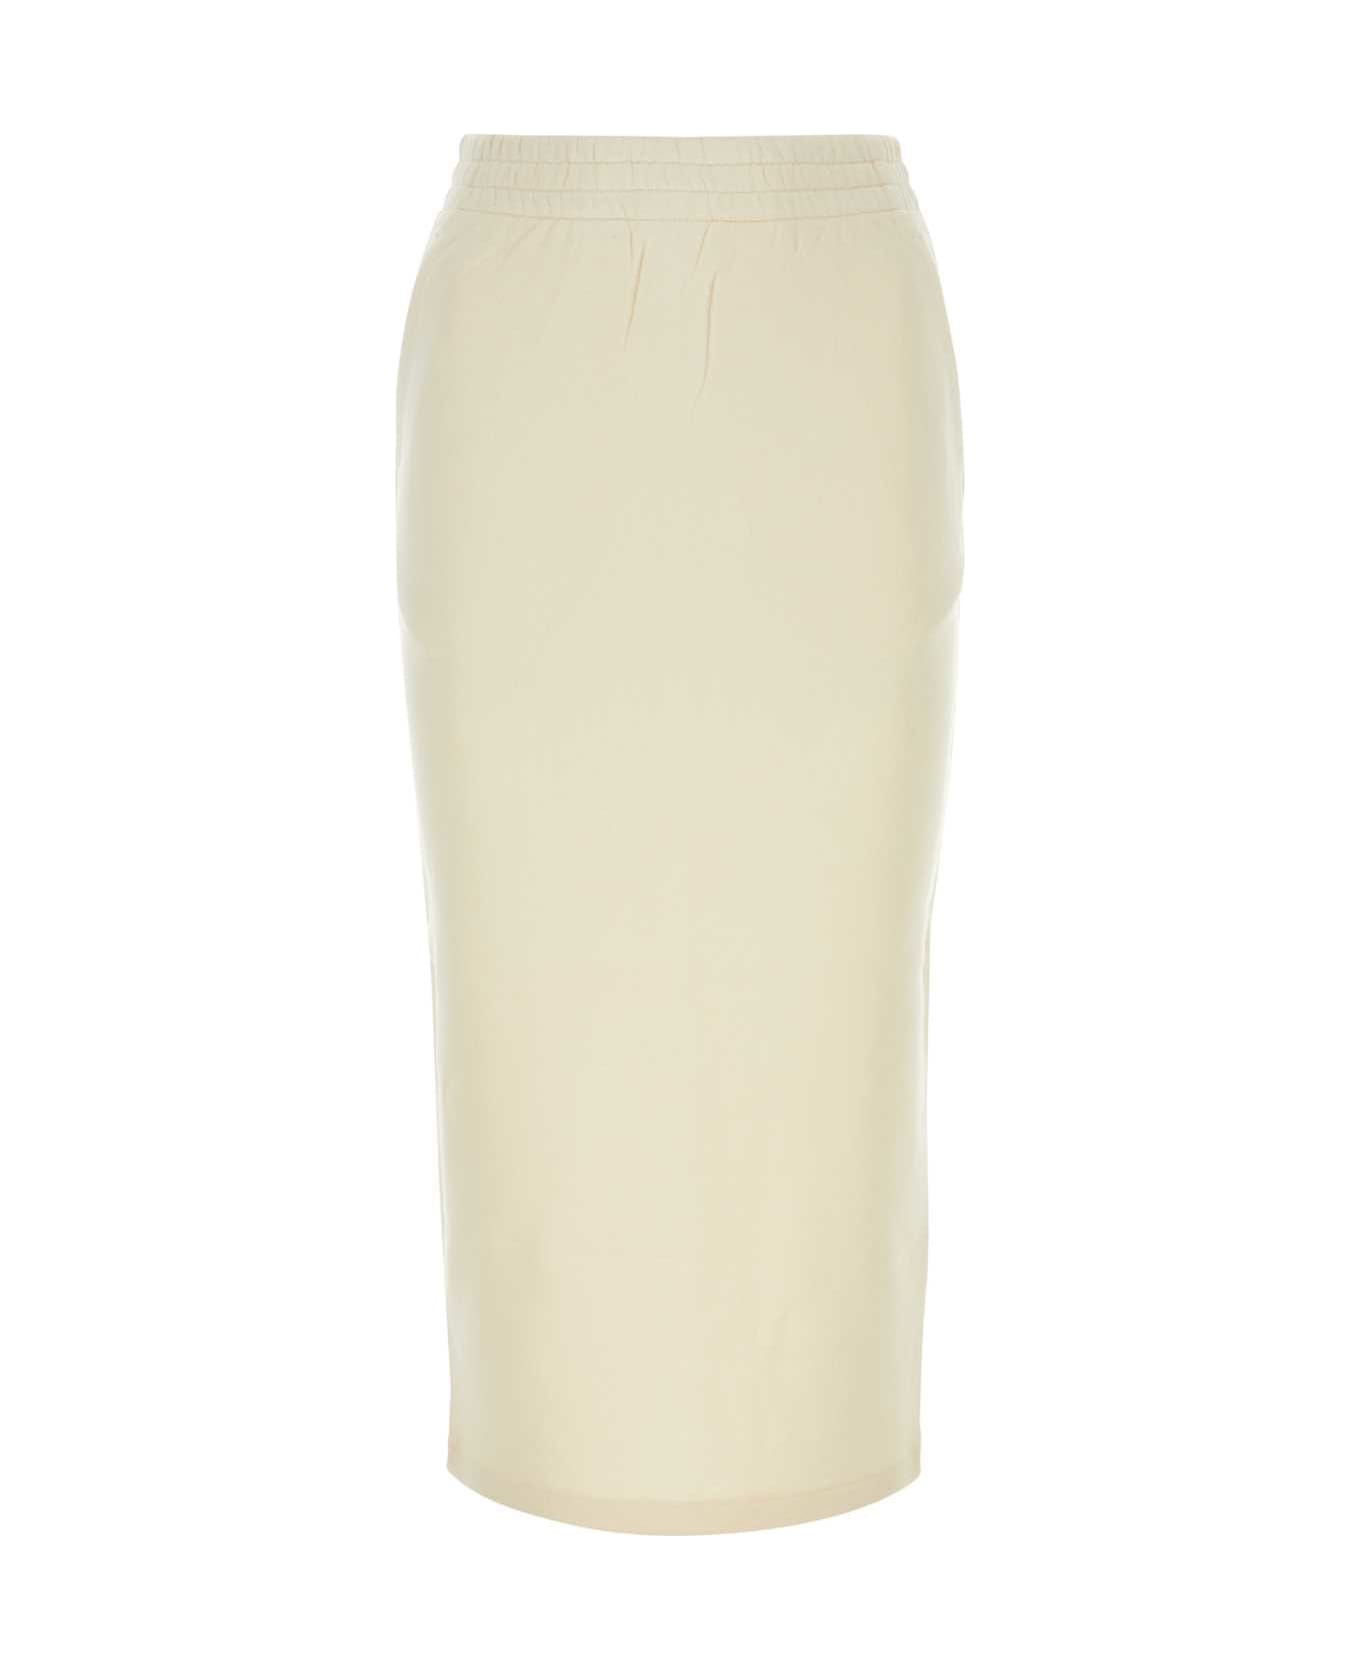 Prada Cream Cotton Skirt - NATURALE スカート